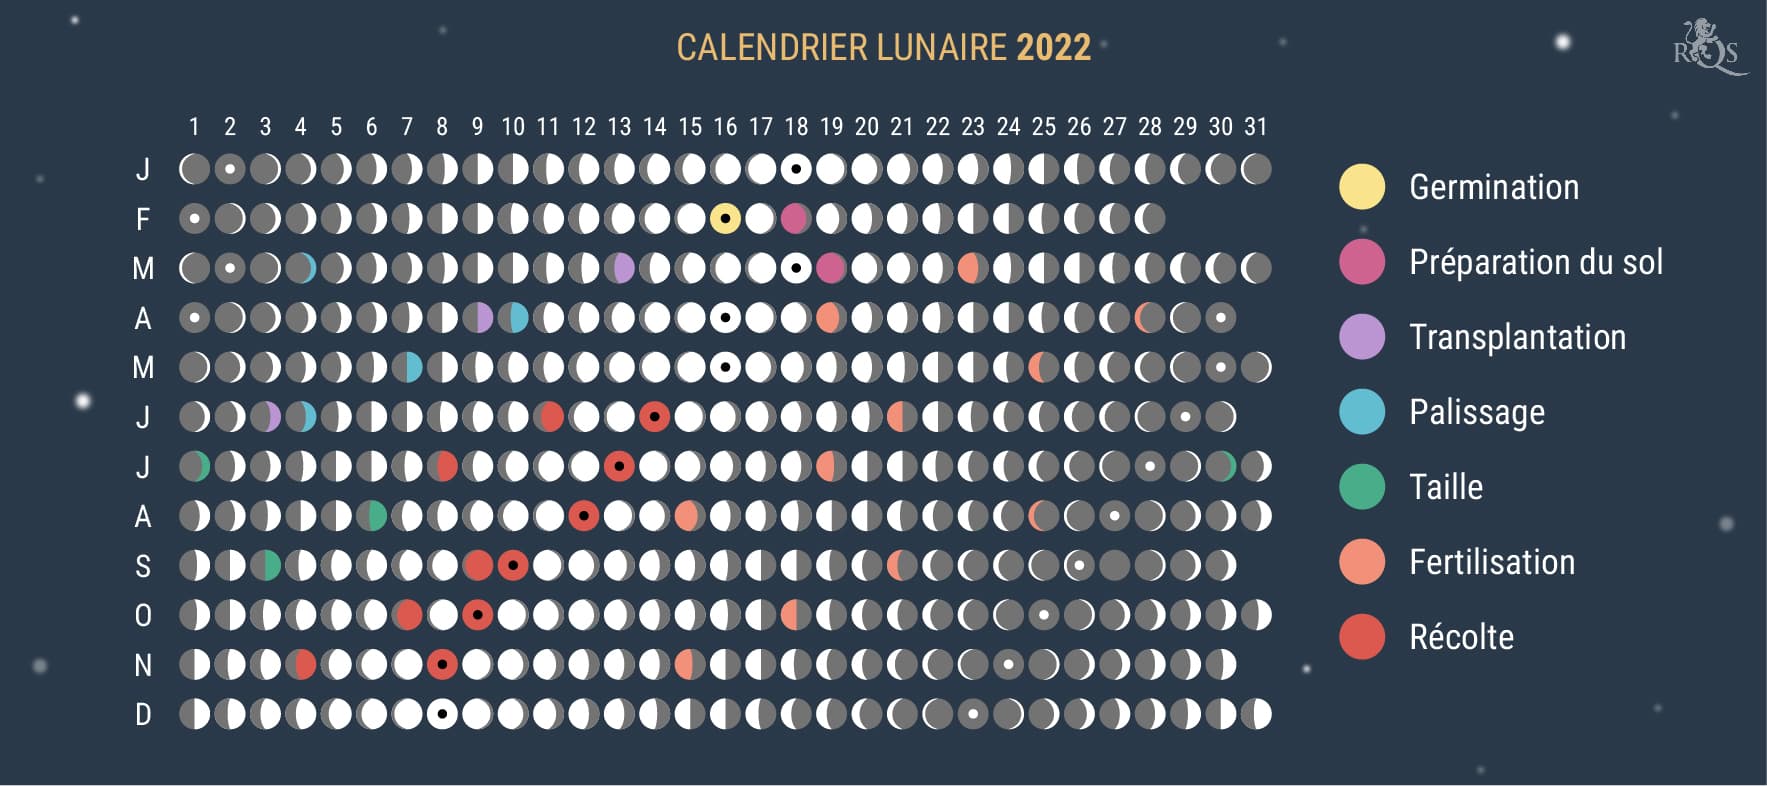 Comment utiliser le calendrier lunaire 2022 pendant la saison de culture